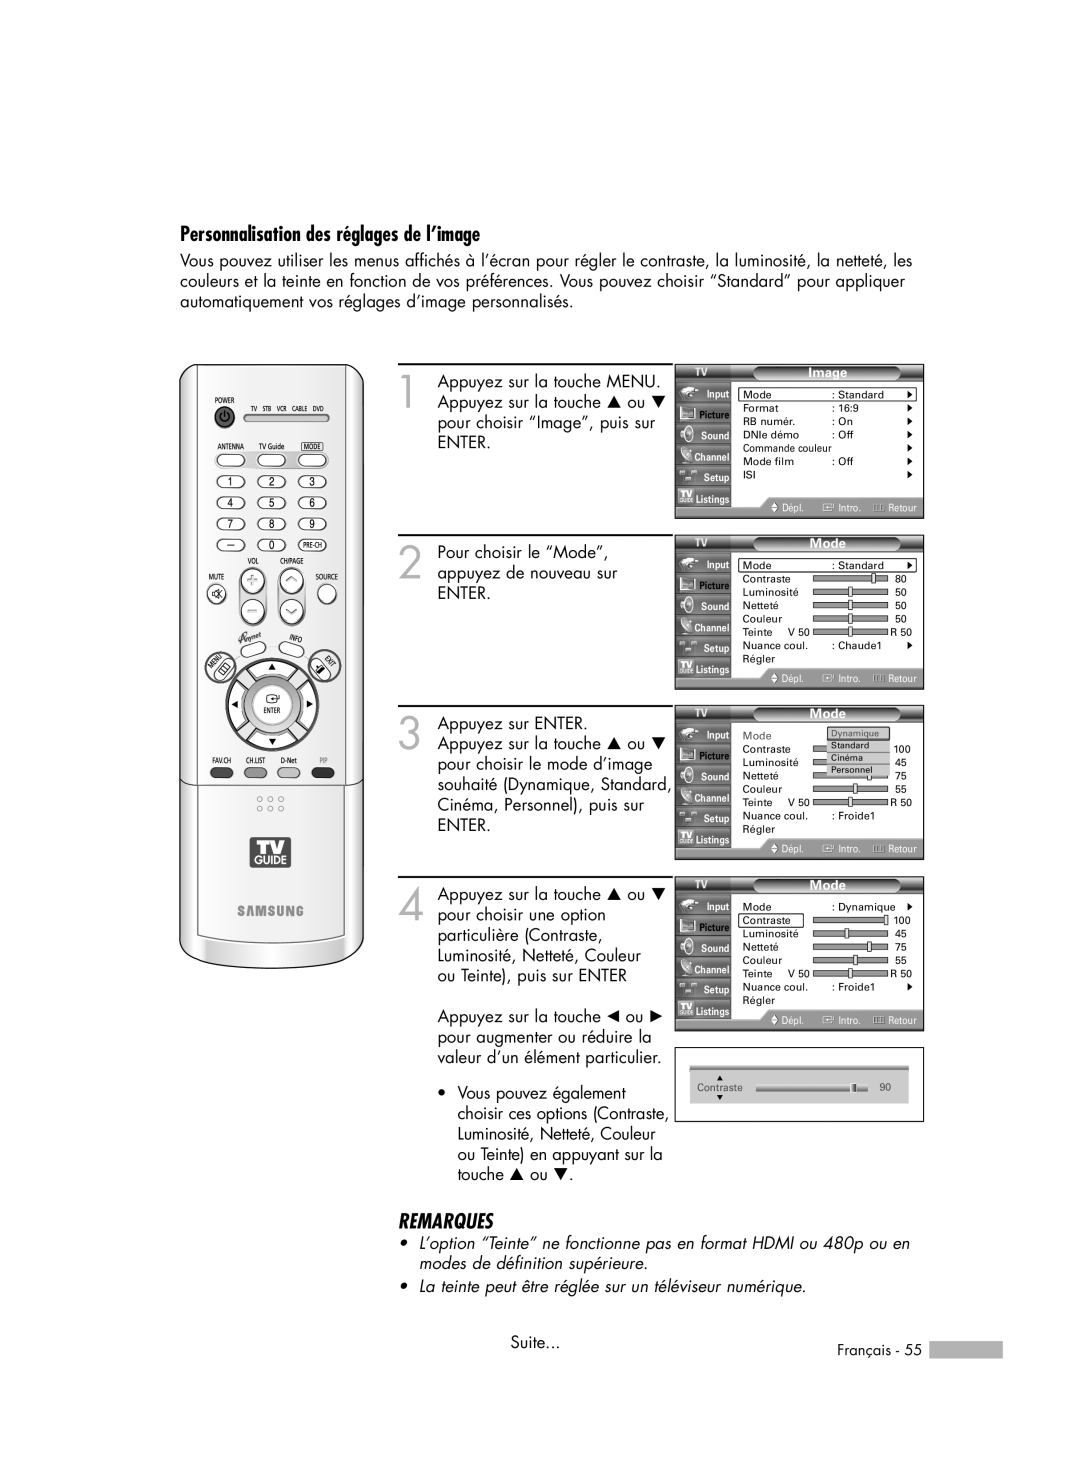 Samsung HL-R7178W, HL-R6178W, HL-R5078W, HL-R5678W manual Personnalisation des réglages de l’image, Remarques 